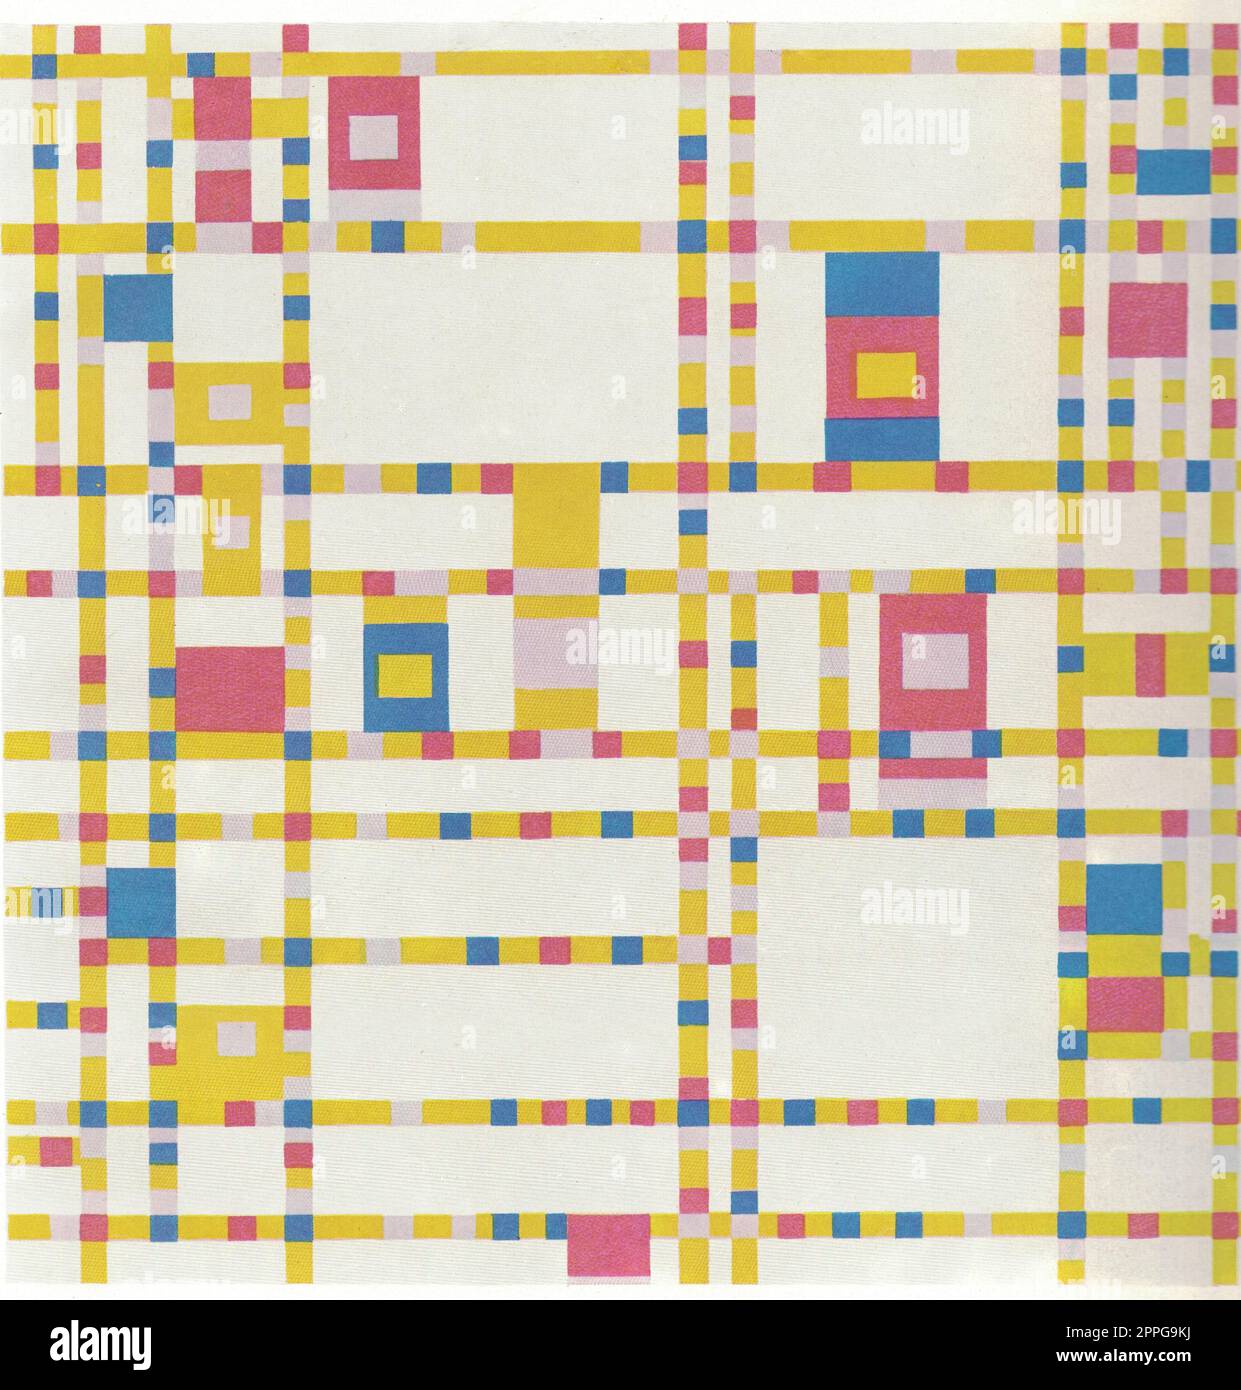 Piet Mondrian, Broadway Boogie Woogie, 1942-43. Banque D'Images